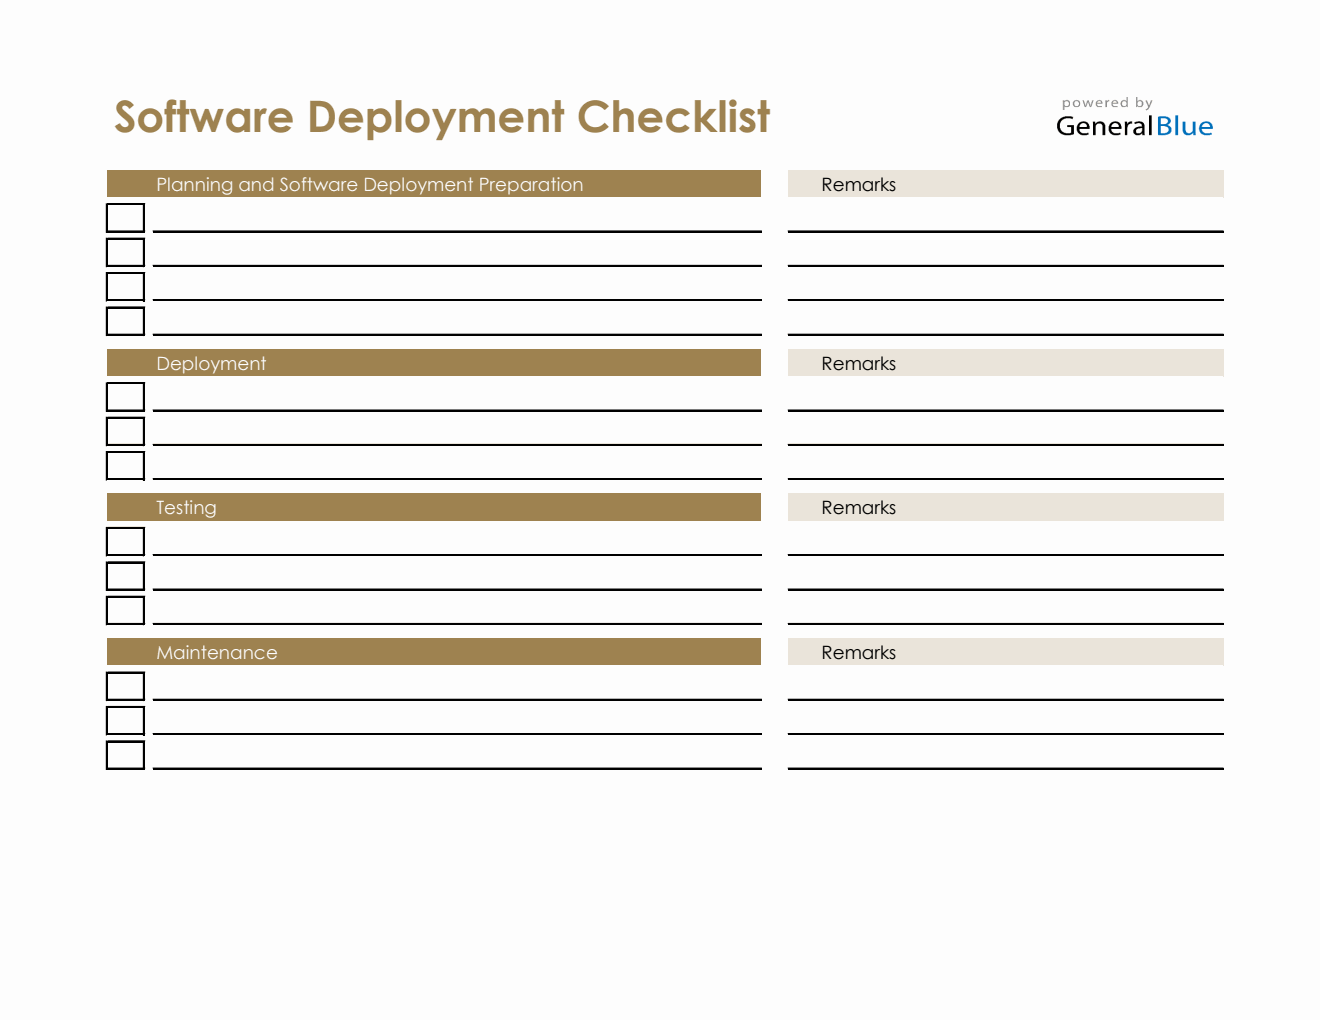 Software Deployment Checklist in Excel